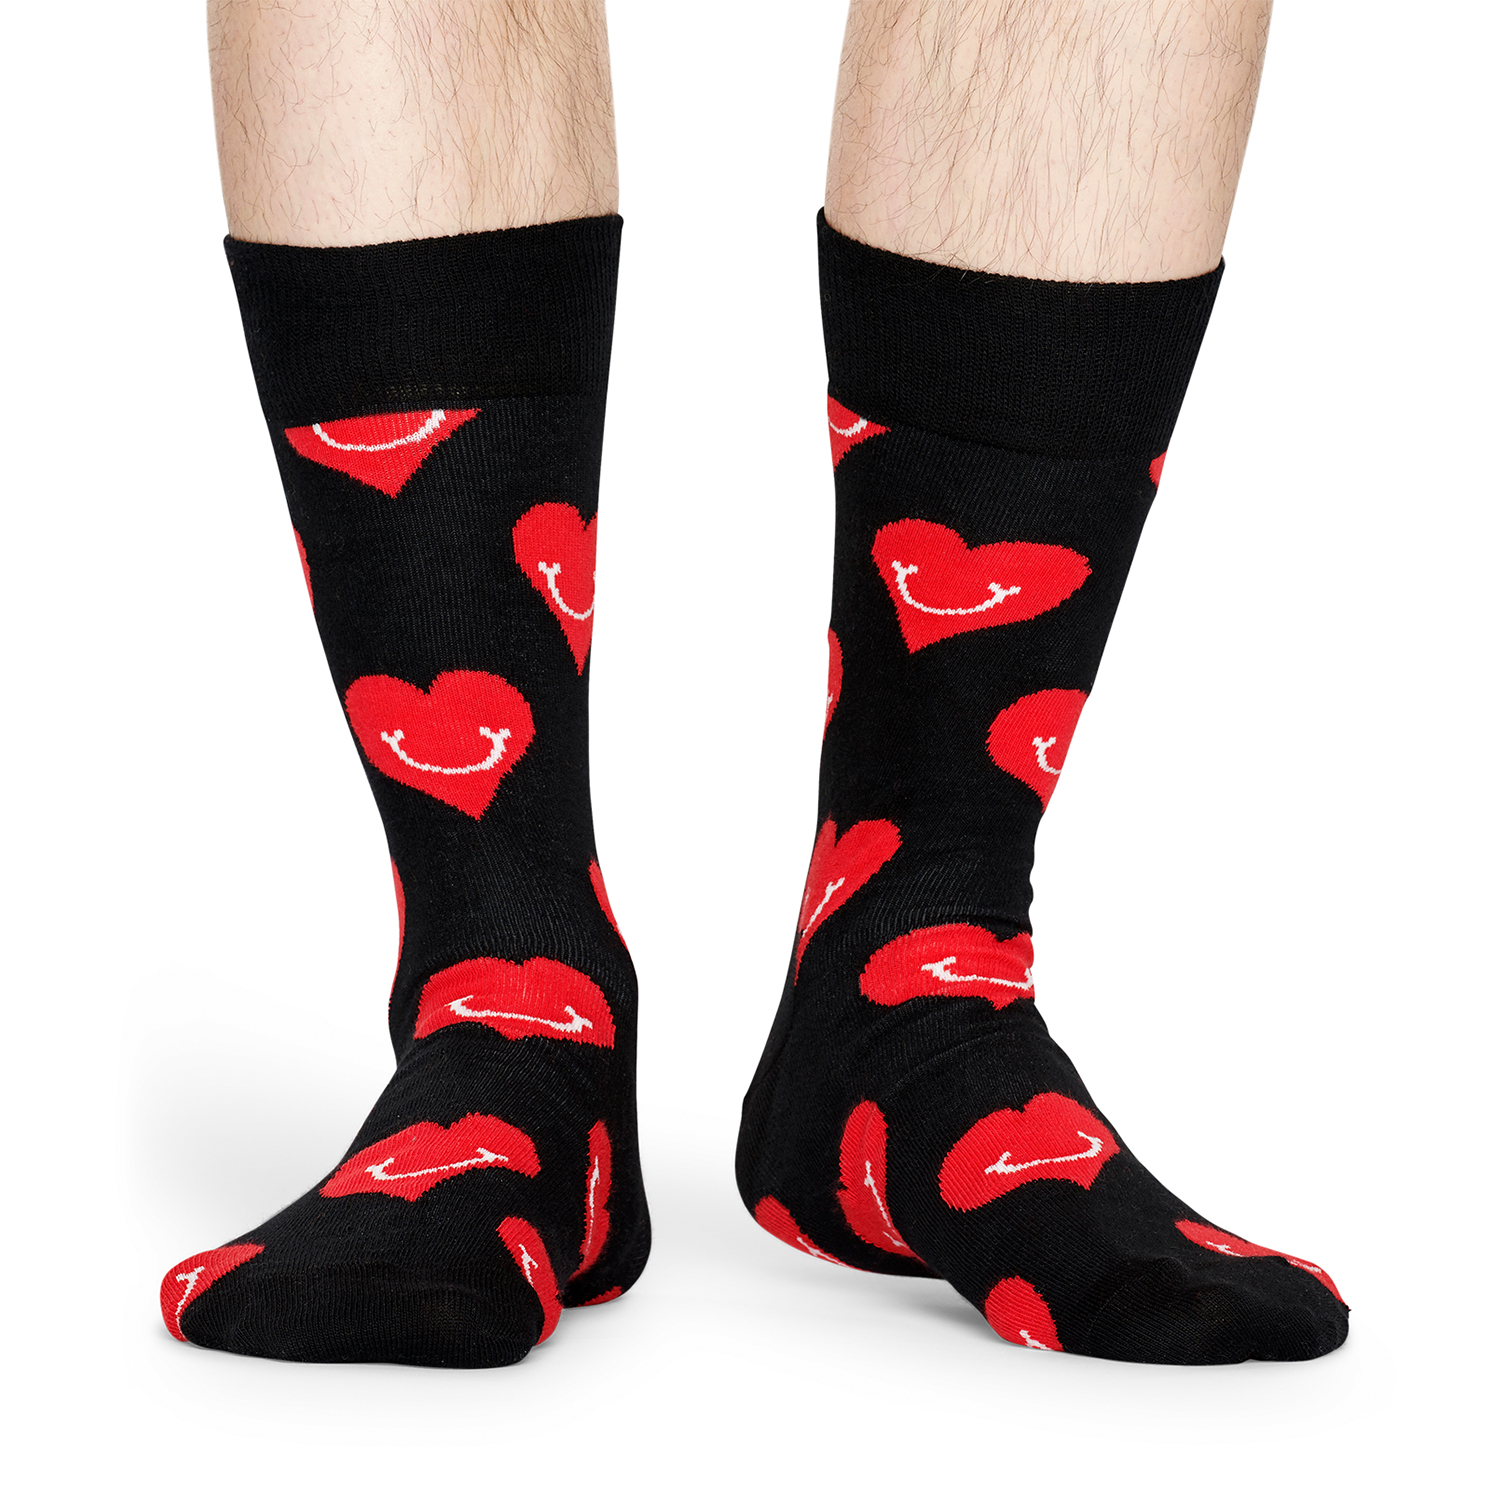 Happy Socks - Set of 3 Pairs of I Love You Socks in Love Presentation ...